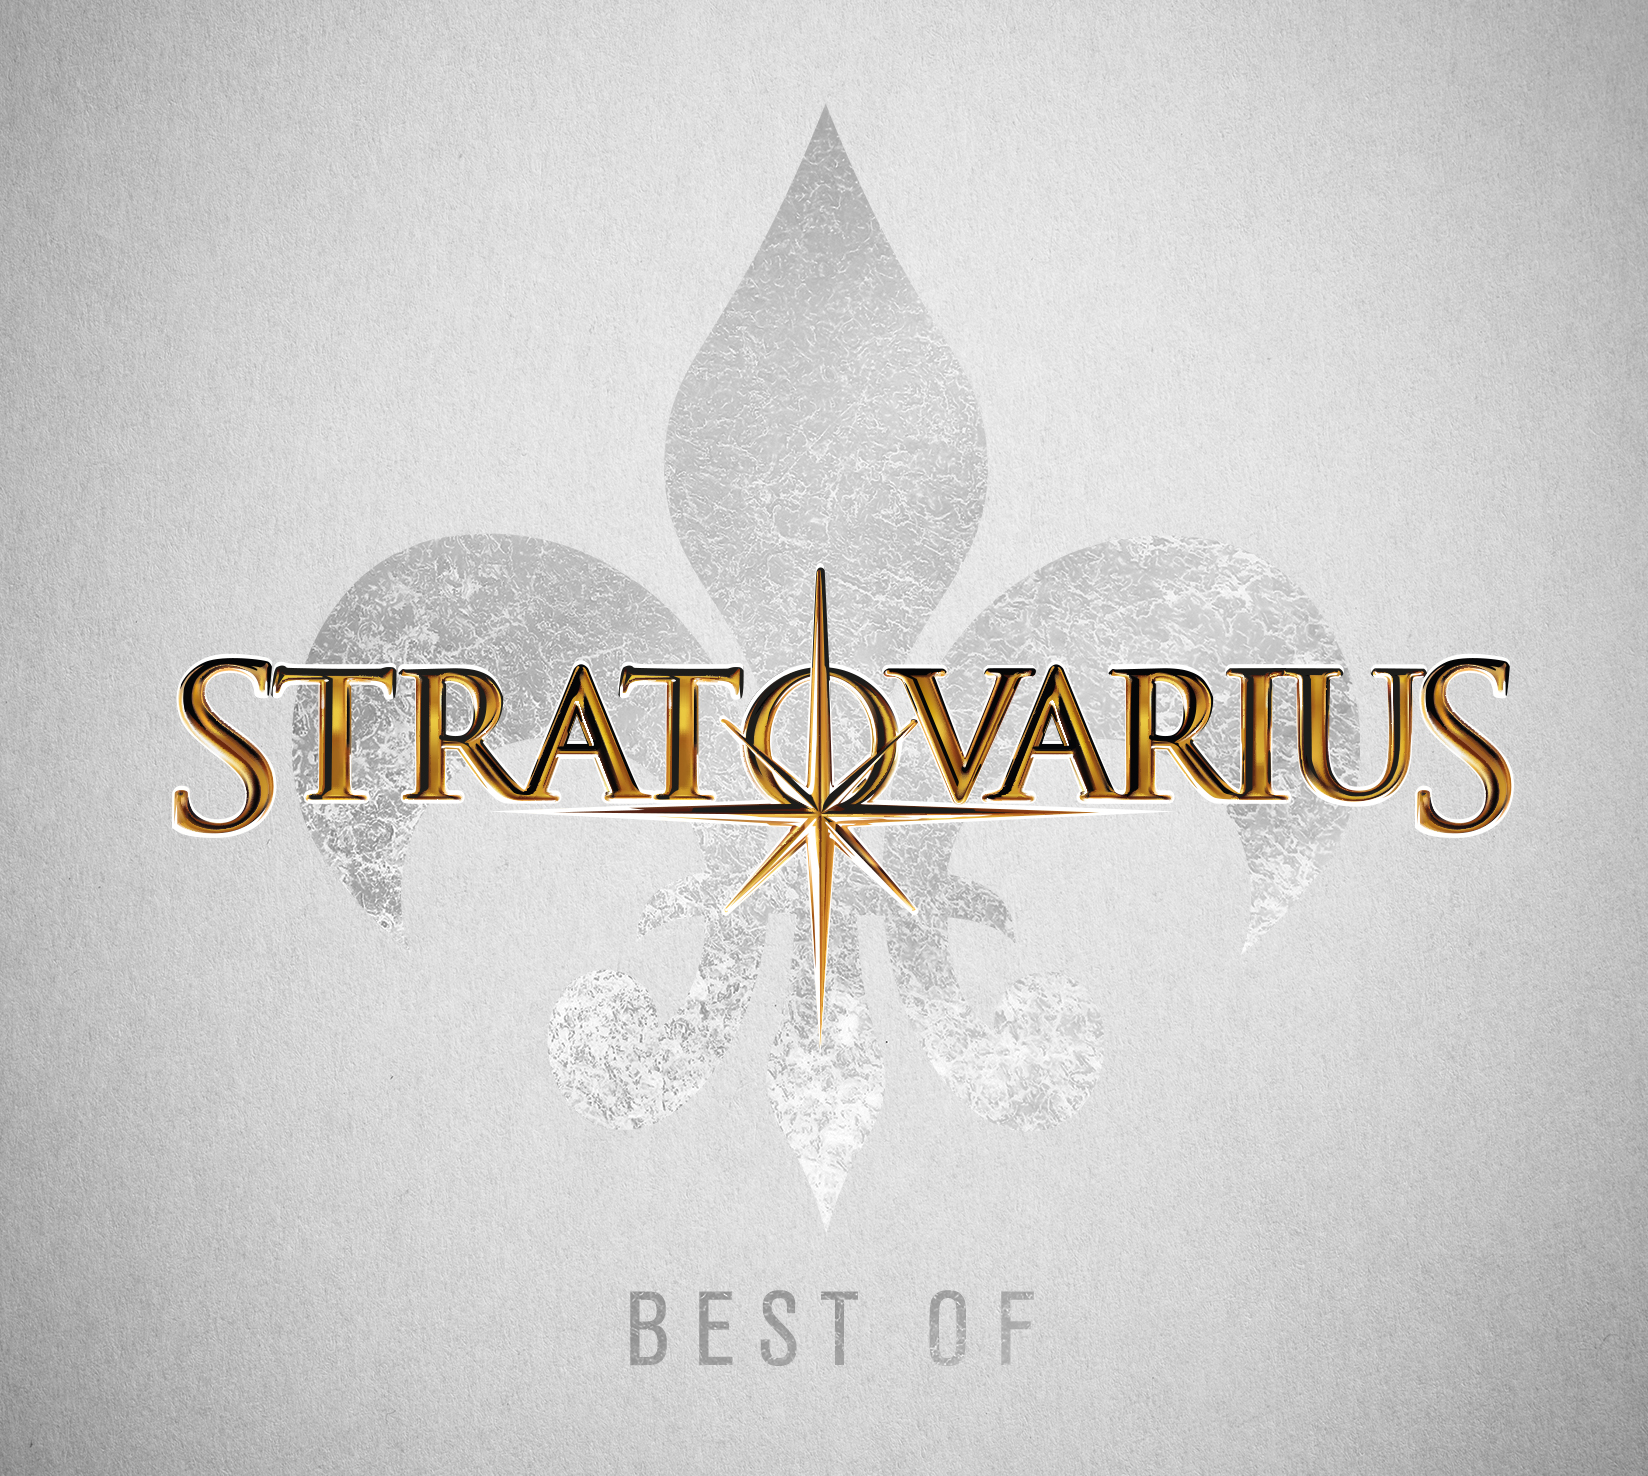 Stratovarius - Best Of - 2xCD